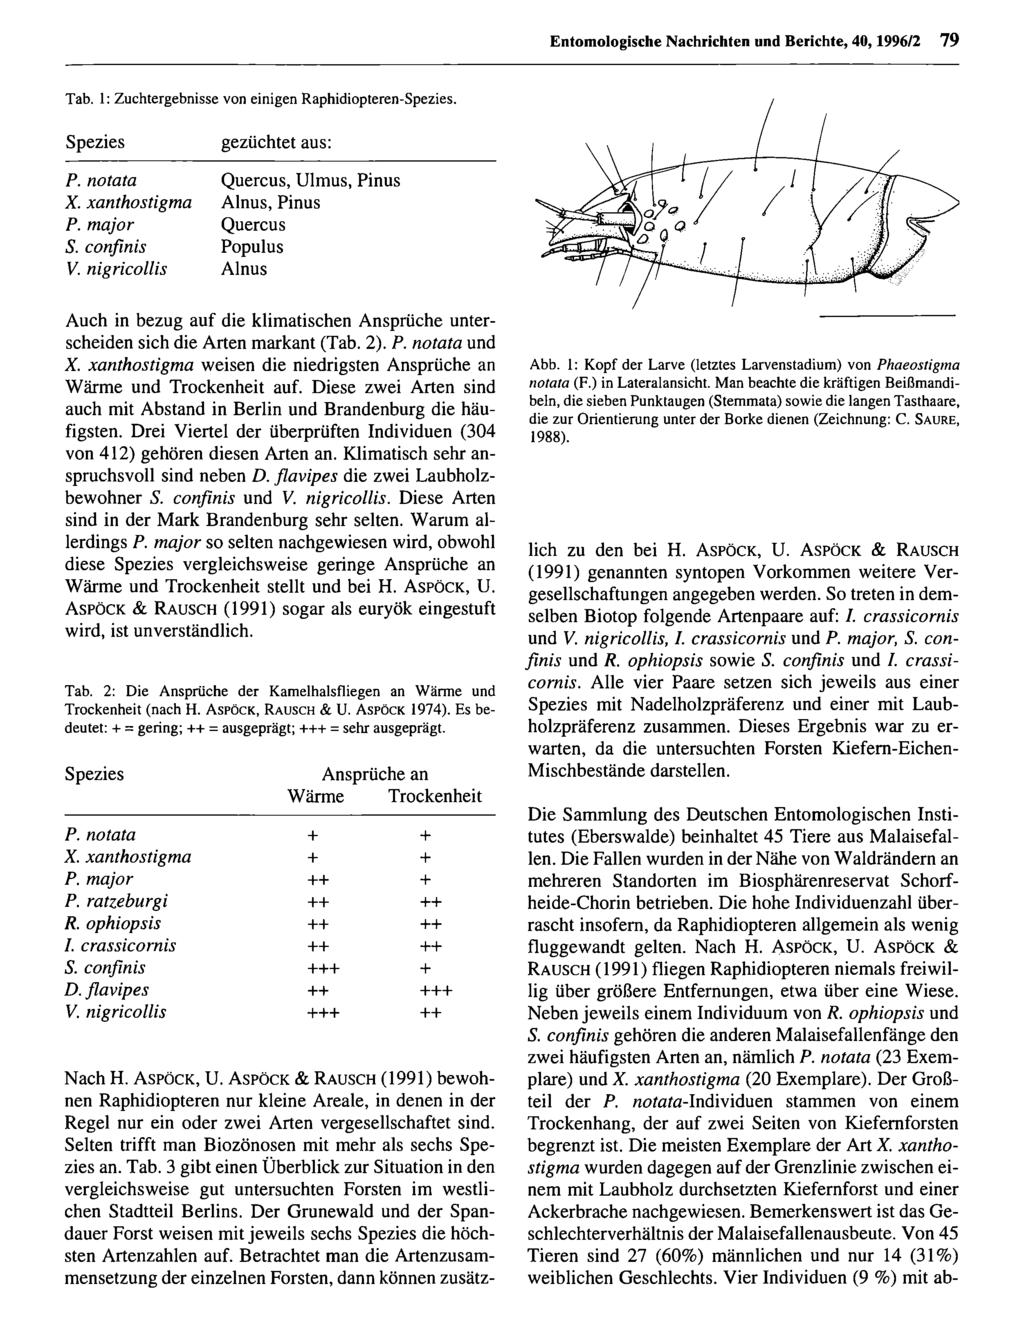 Entomologische Nachrichten und Berichte; download Entomologische unter www.biologiezentrum.at Nachrichten und Berichte, 40,1996/2 79 Tab. 1: Zuchtergebnisse von einigen Raphidiopteren-Spezies.